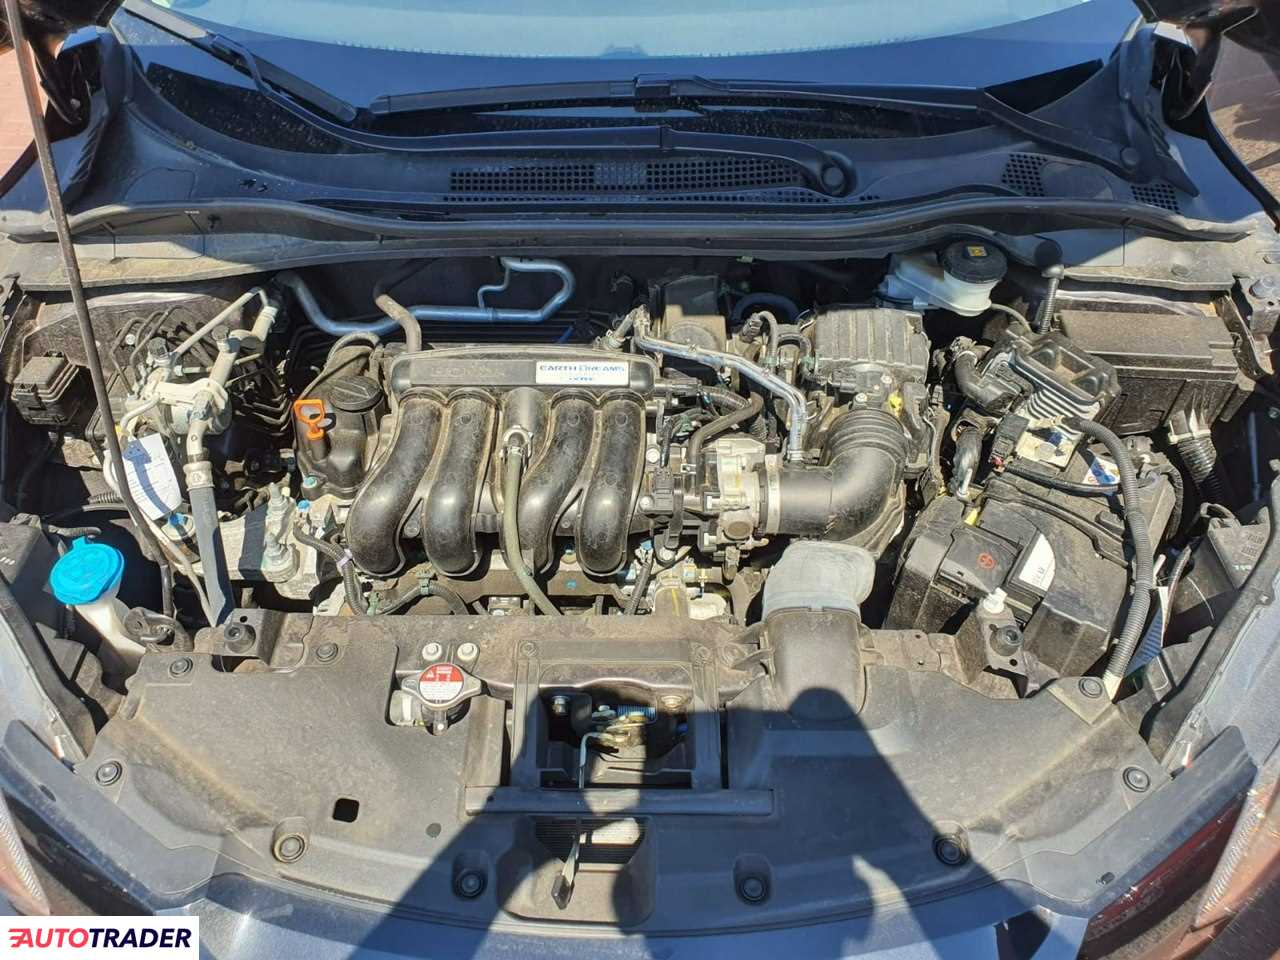 Honda HRV 1.5 benzyna 130 KM 2018r. (SADE BUDY